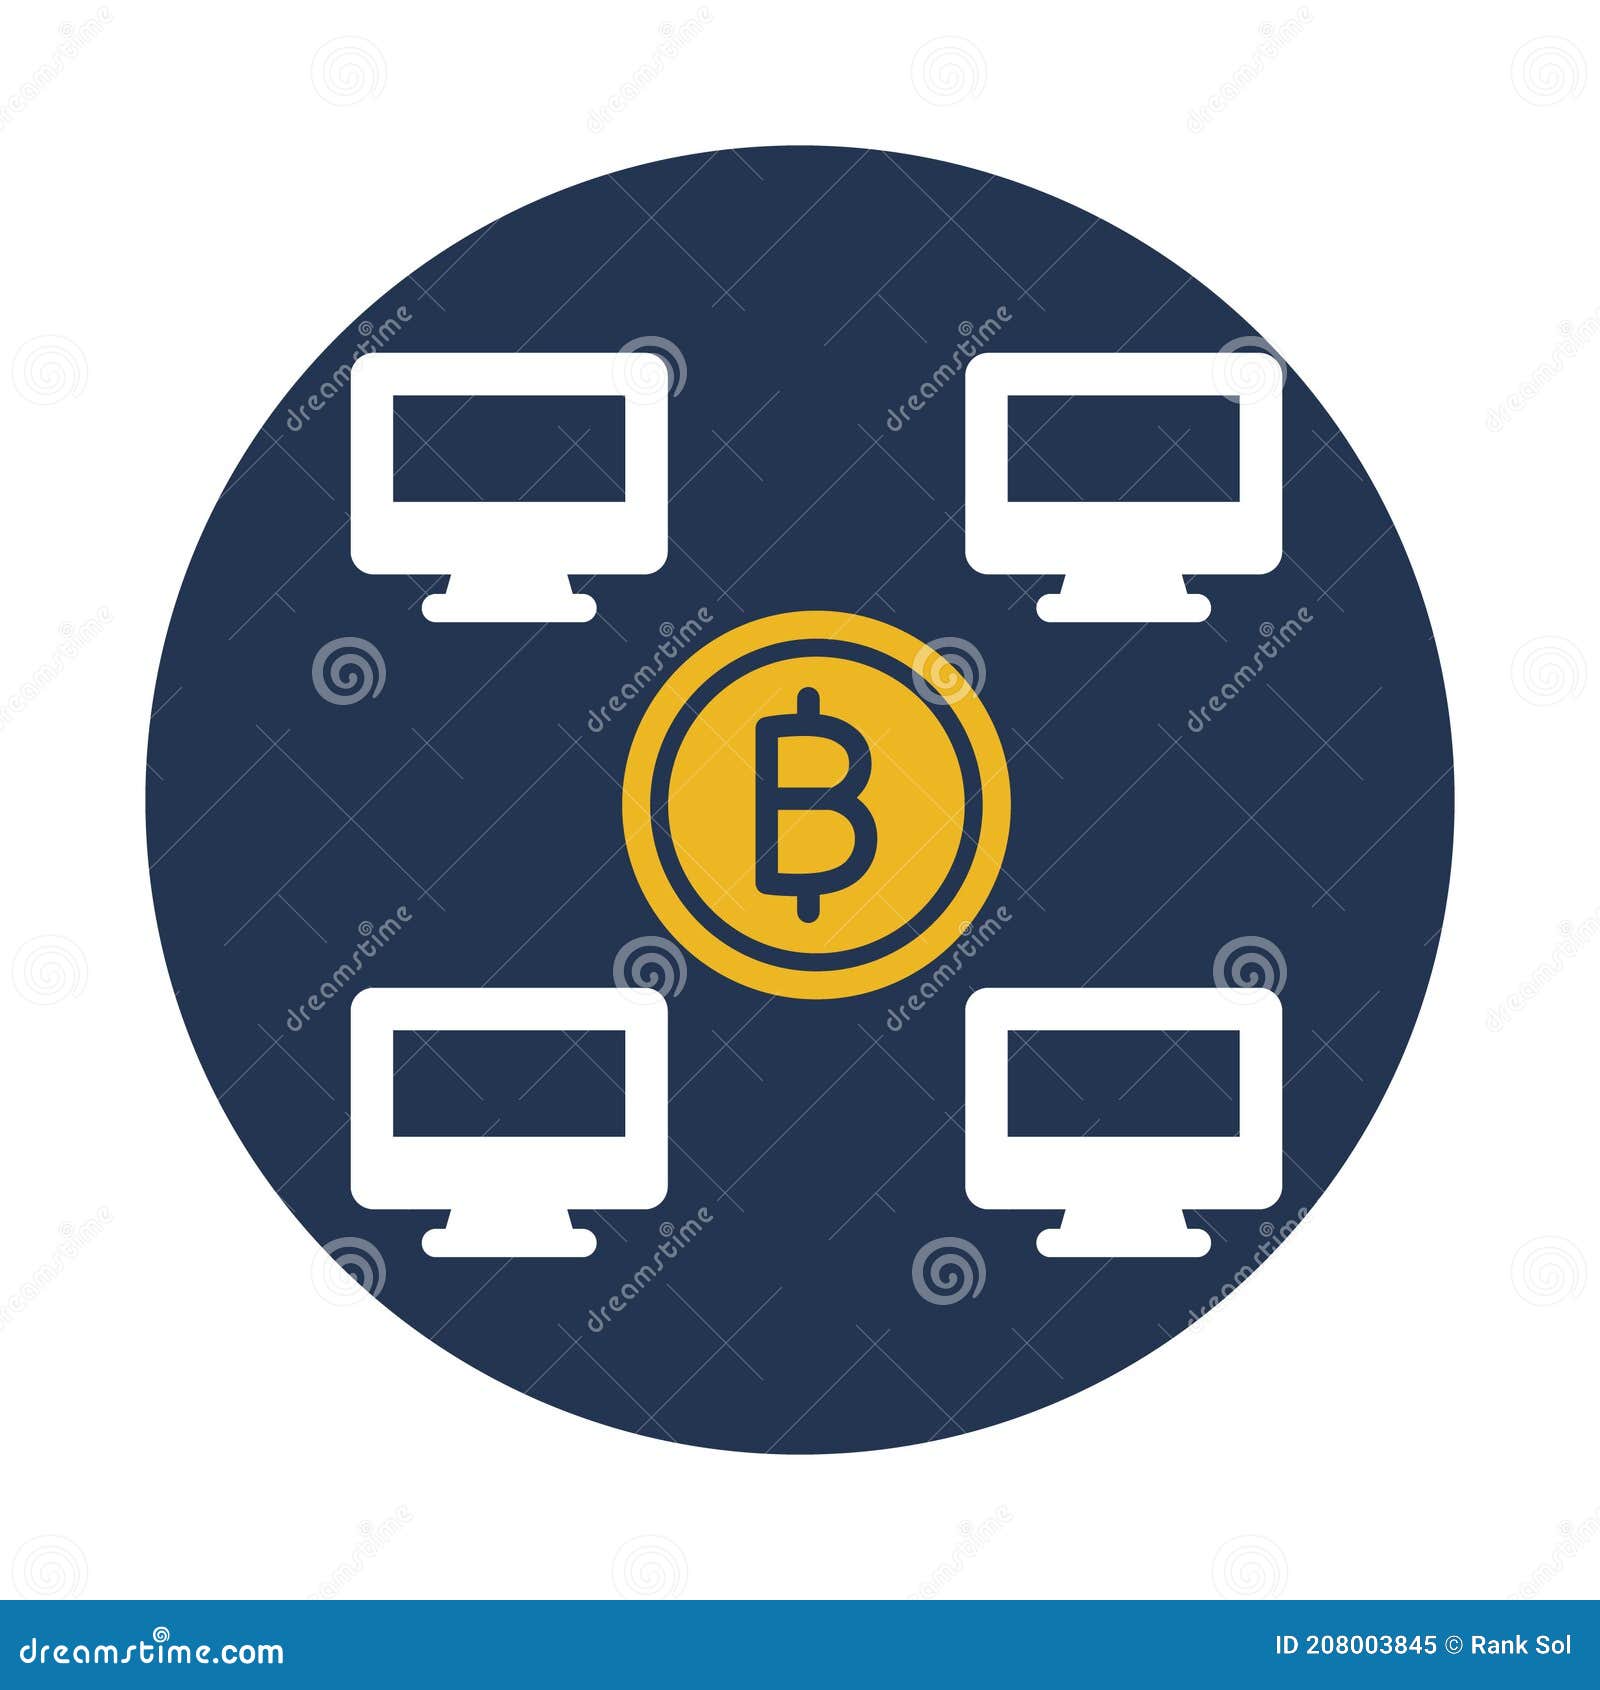 Bitcoin monitorings)